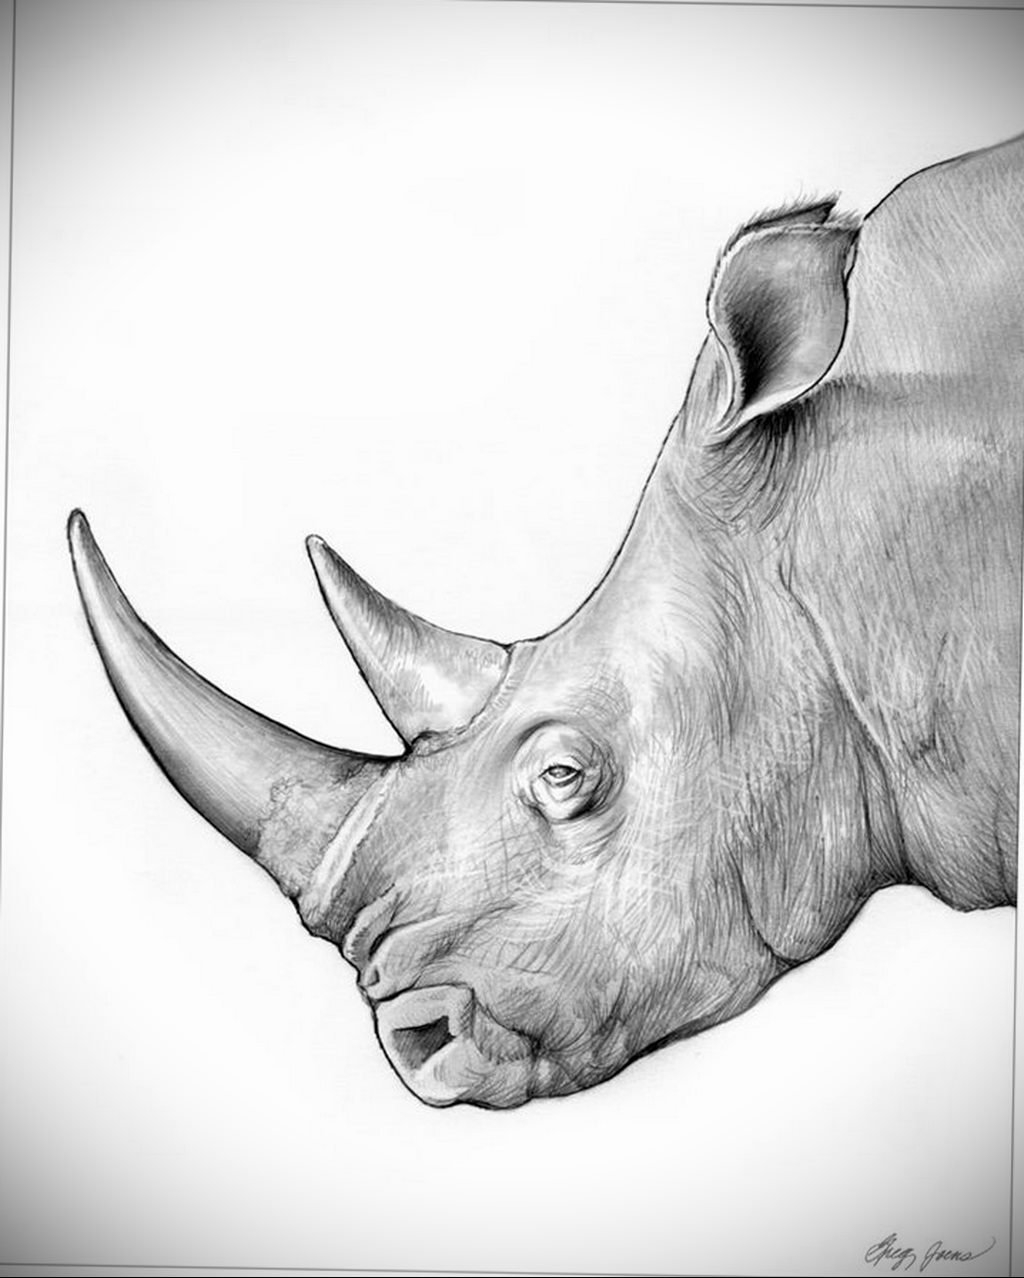 Как нарисовать носорога карандашом поэтапно